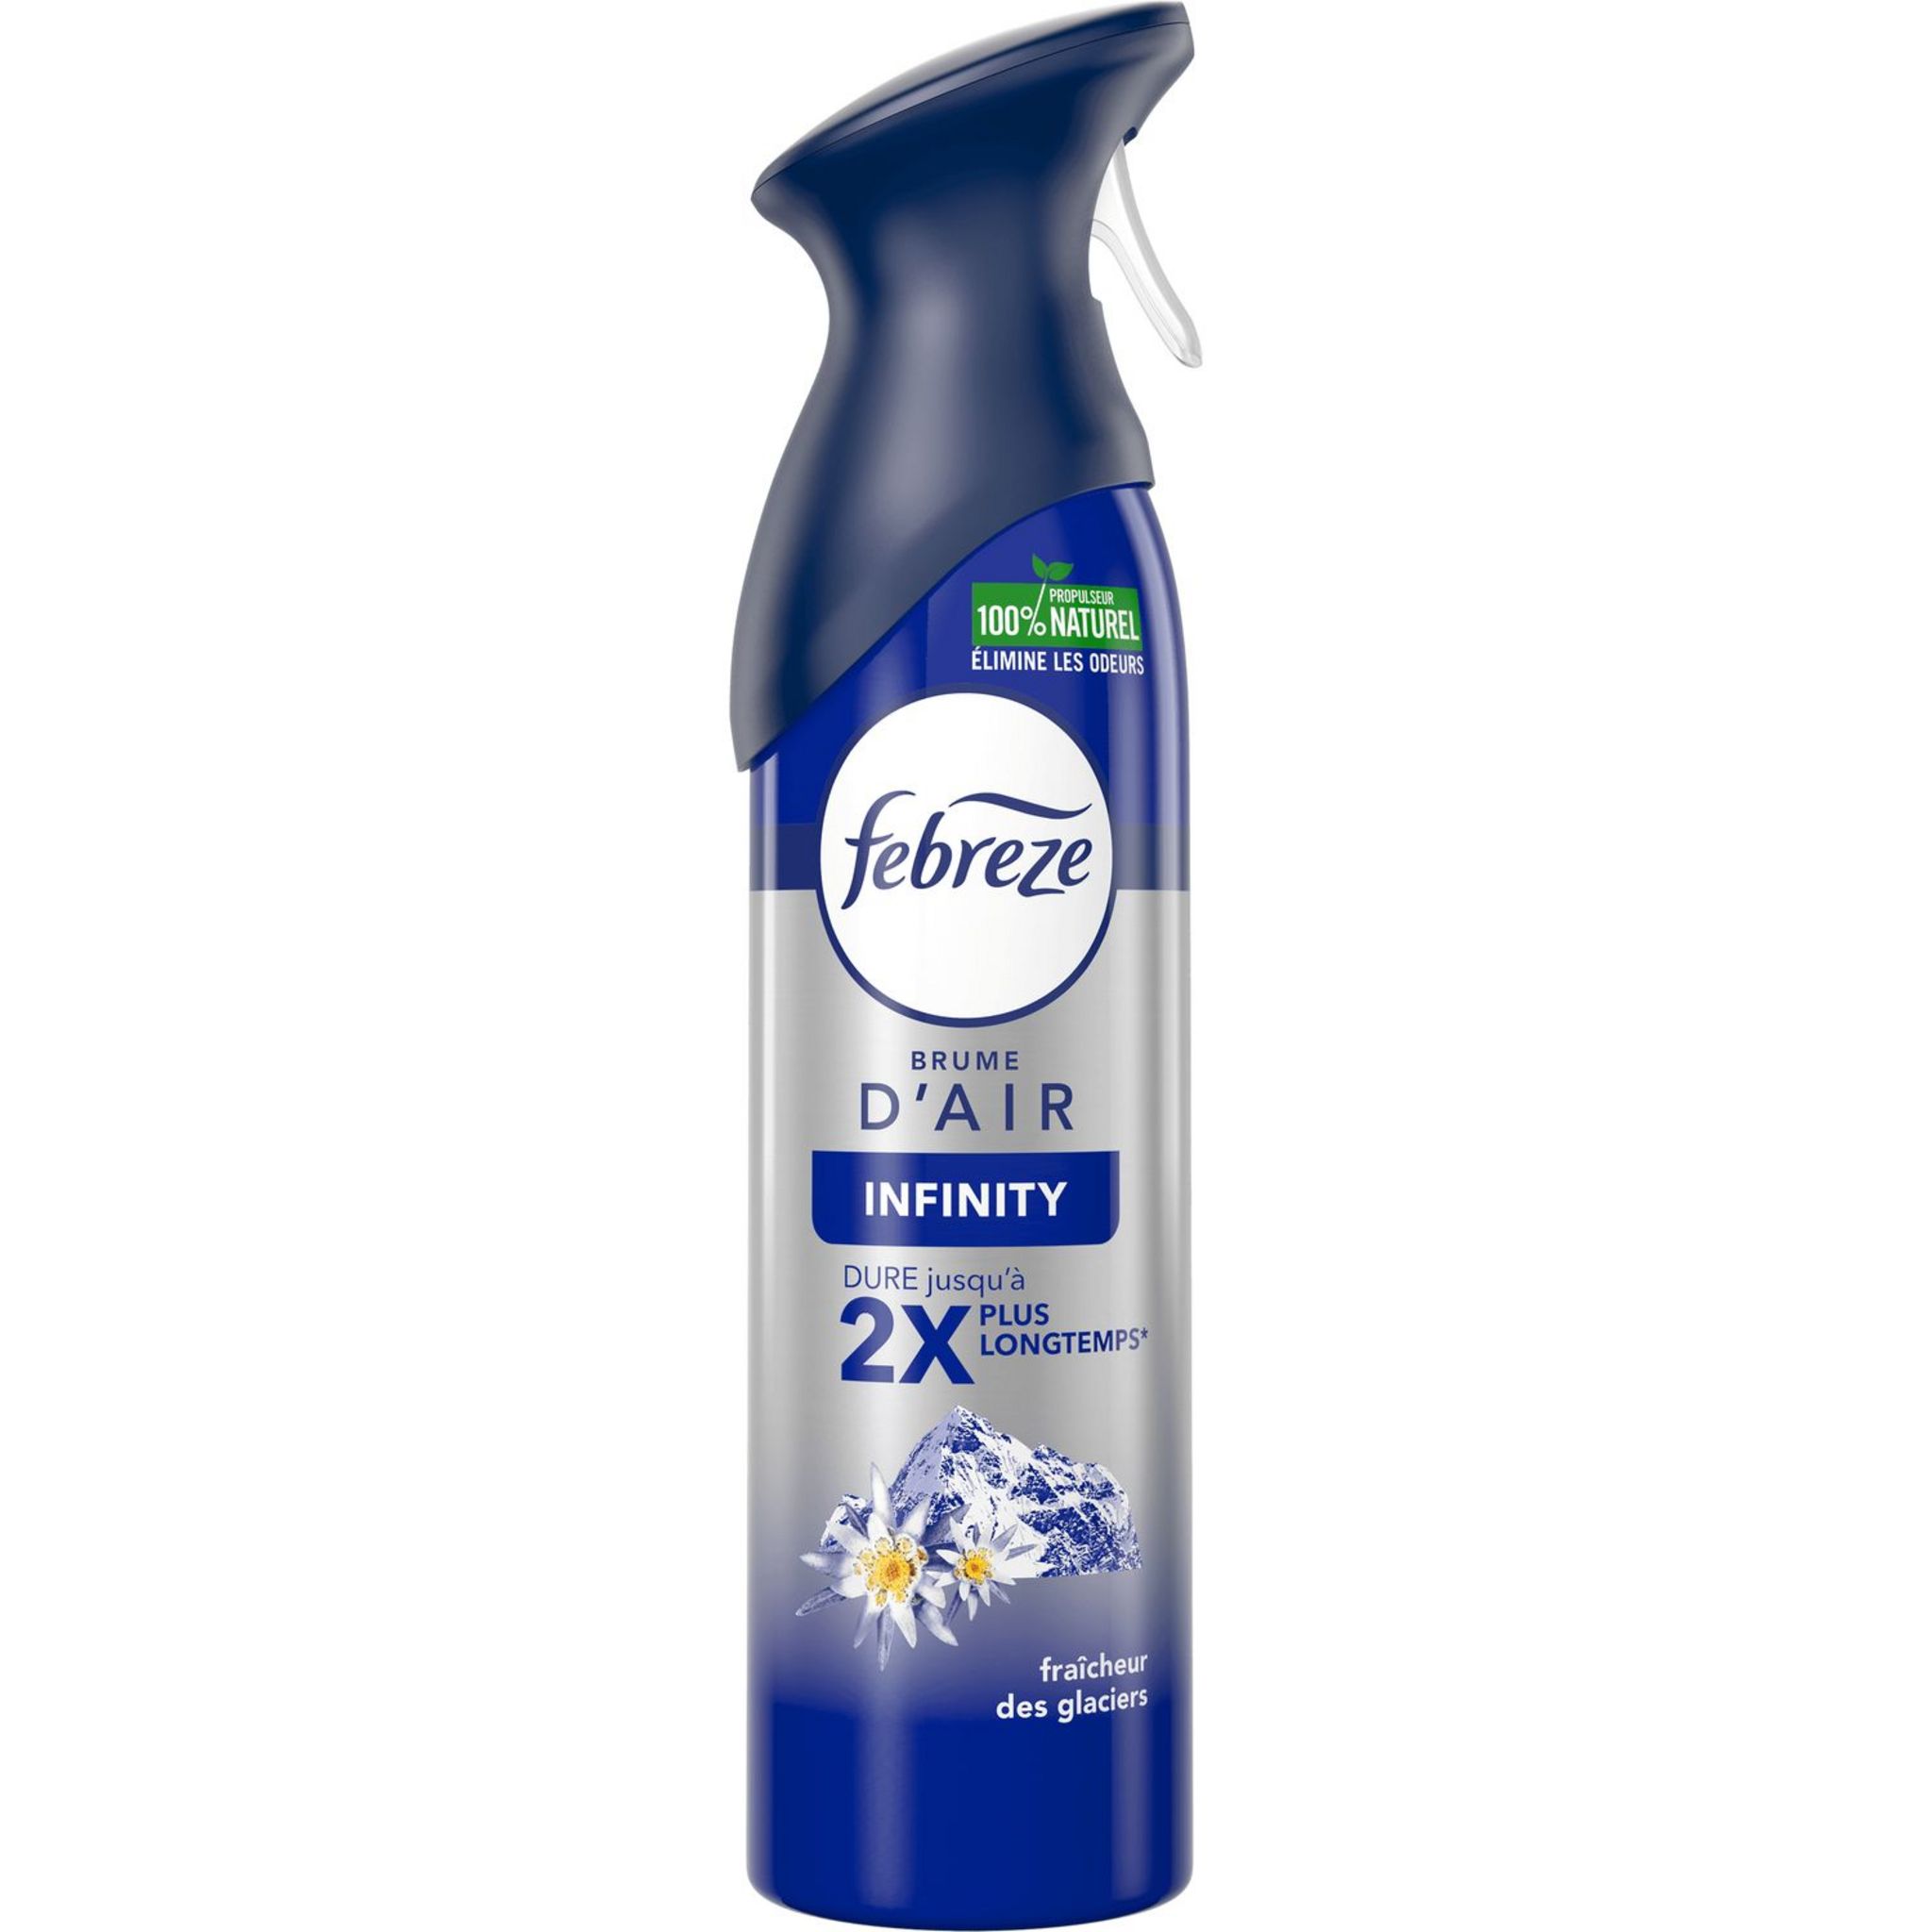 Febreze Spray Désodorisant Maison, 2 Unités (2 x 300 ml), Spray Aerien,  Pour Élimination et Préventions Des odeurs Persistantes, Rafraîchit